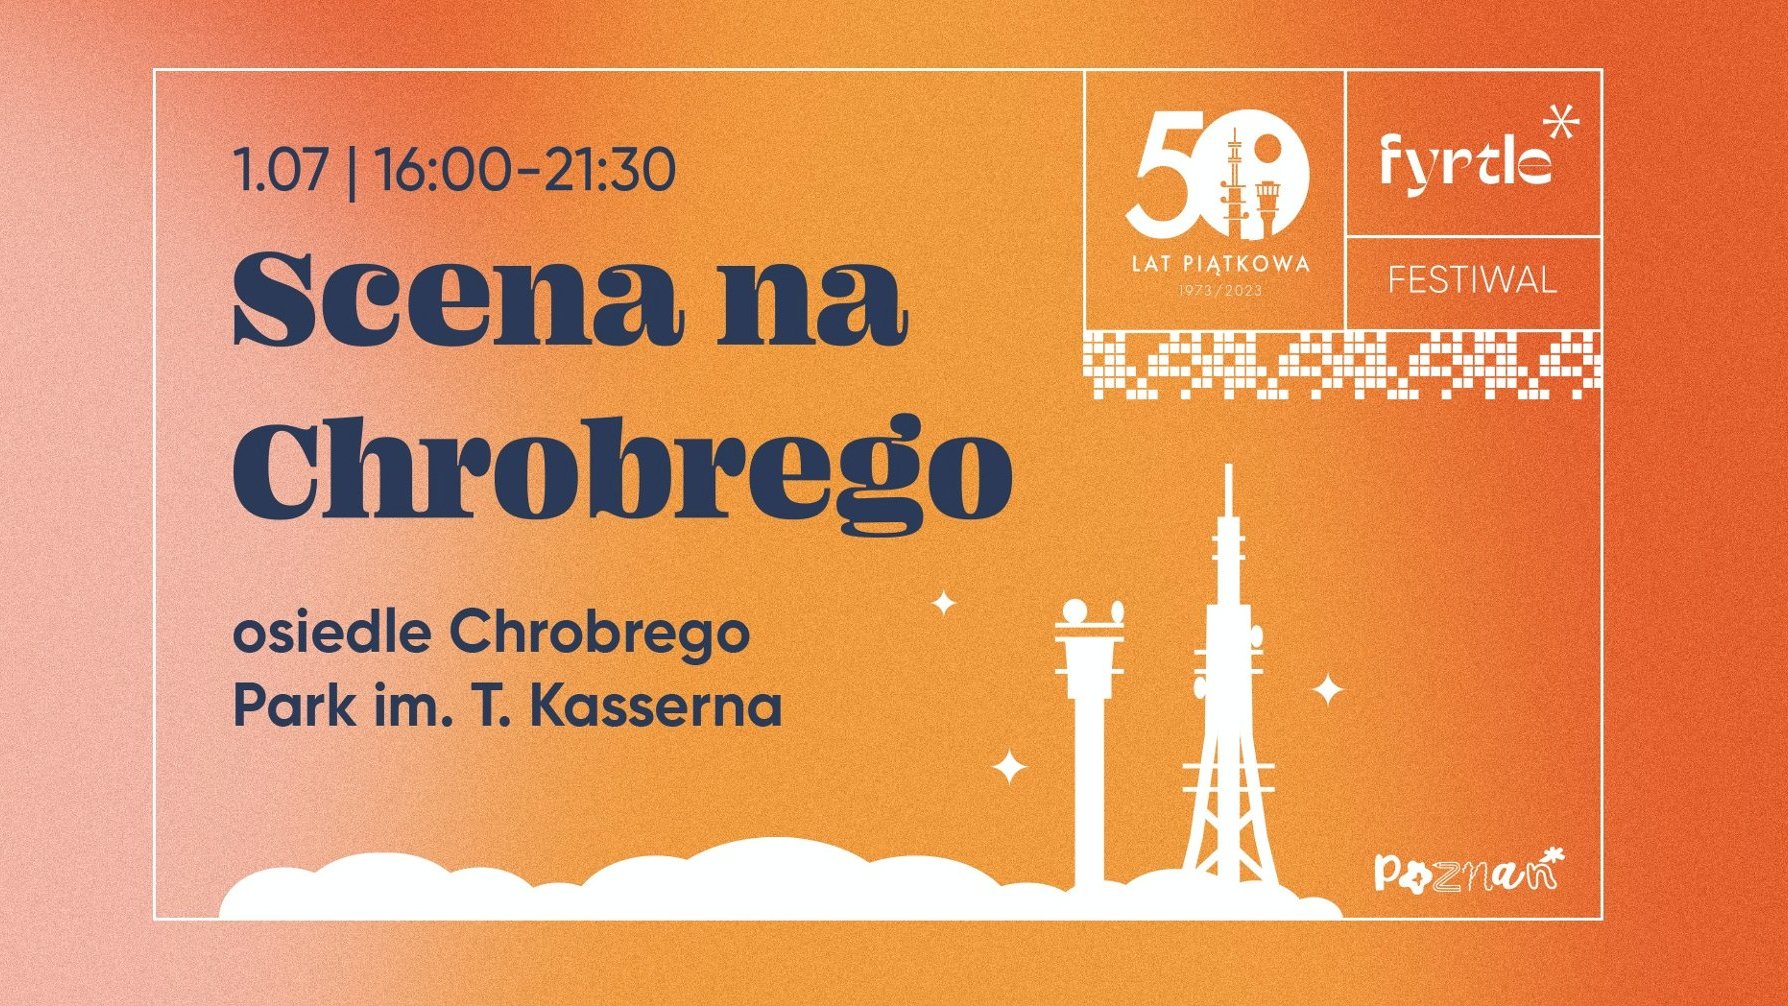 Pomarańczowy plakat wydarzenia z informacjami oraz grafikami dwóch wież z Piątkowa